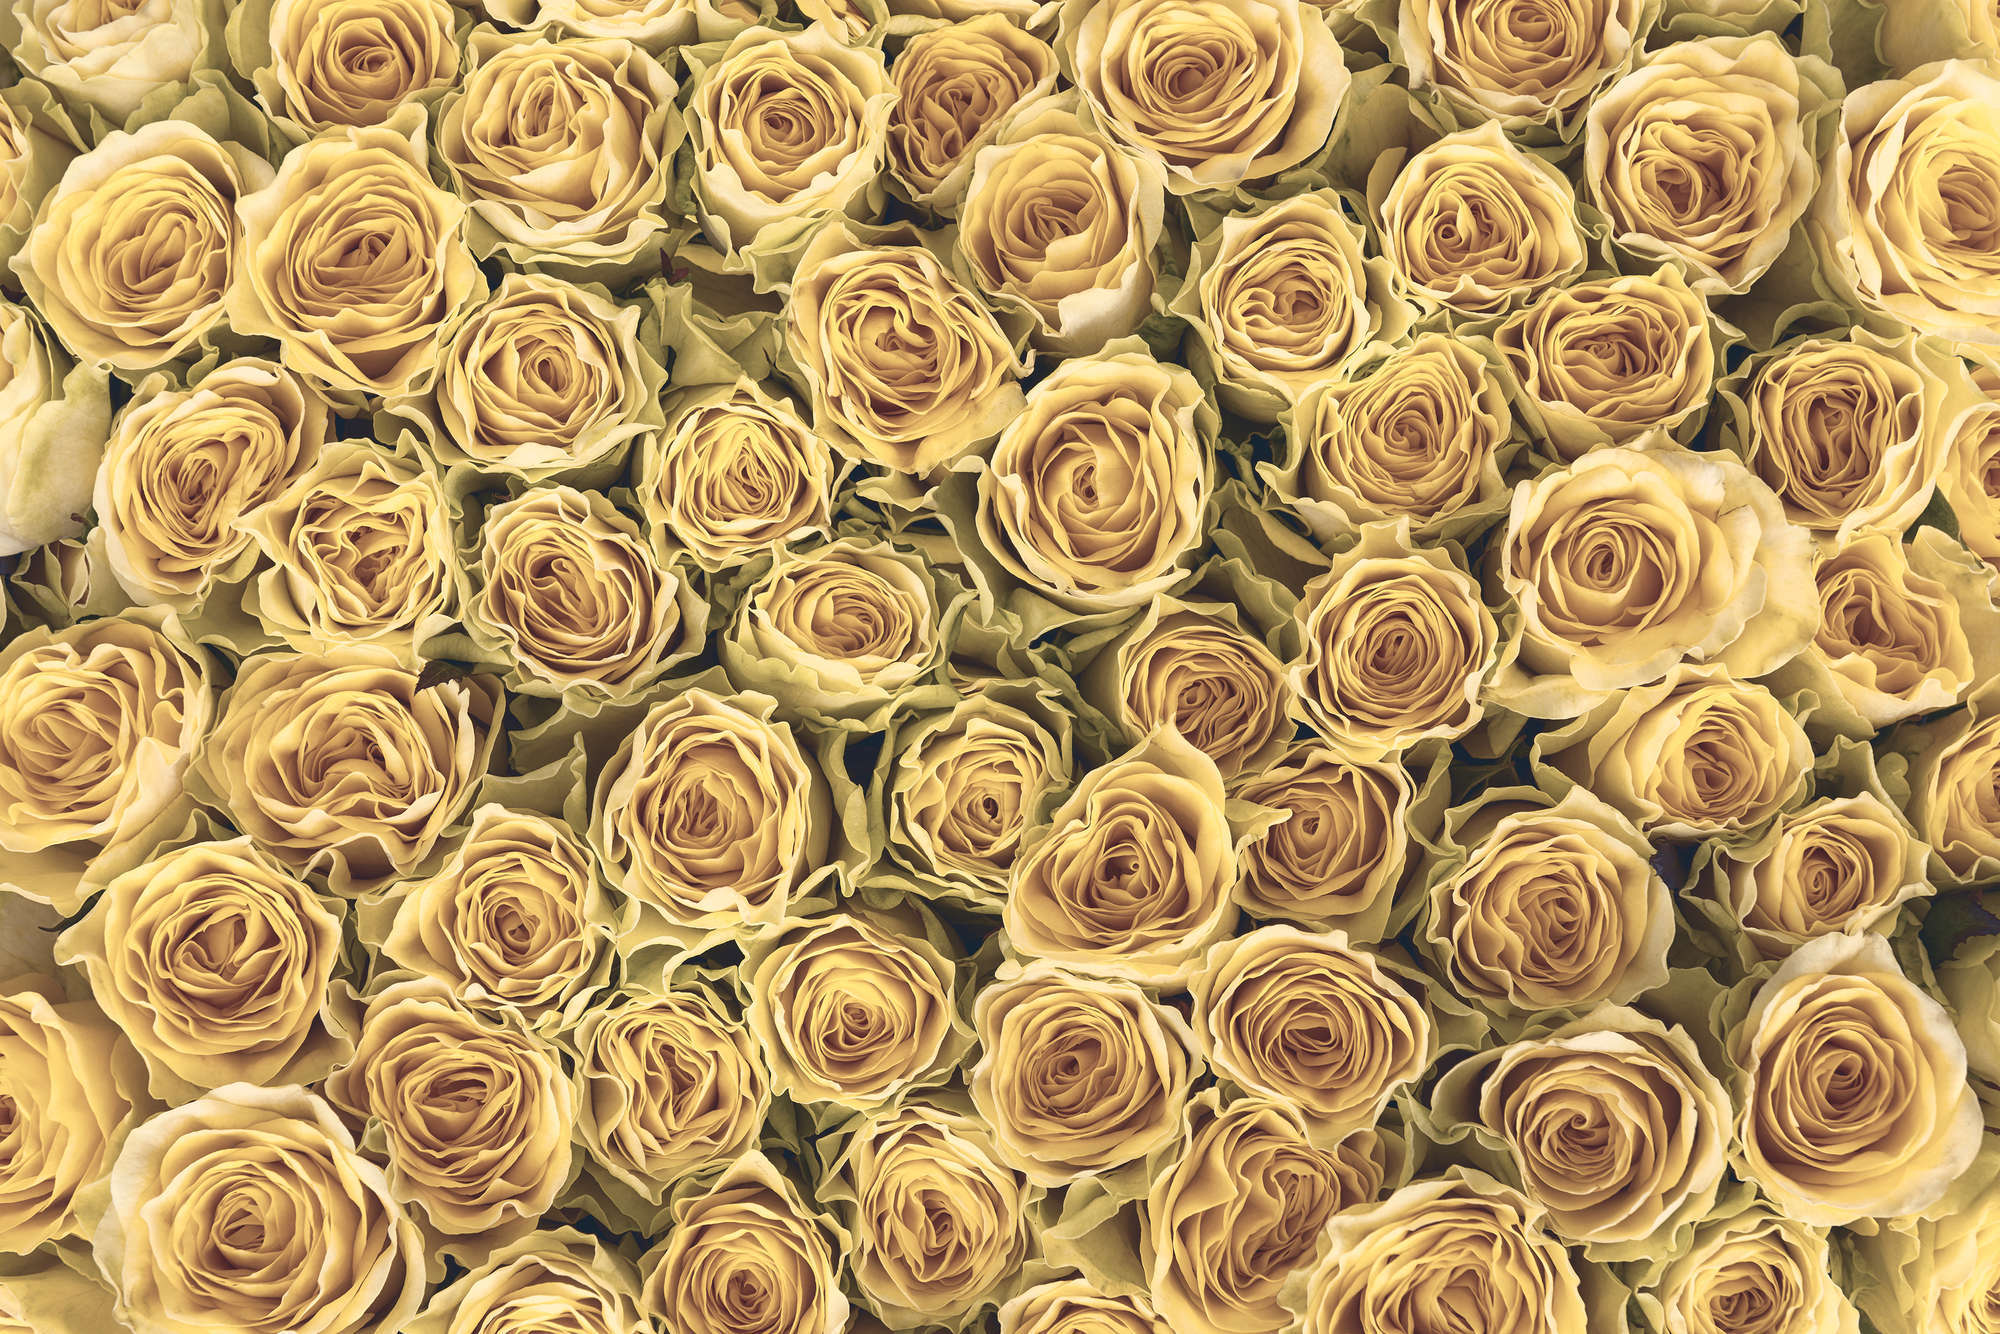             Papel pintado de plantas Rosas doradas sobre vellón liso mate
        